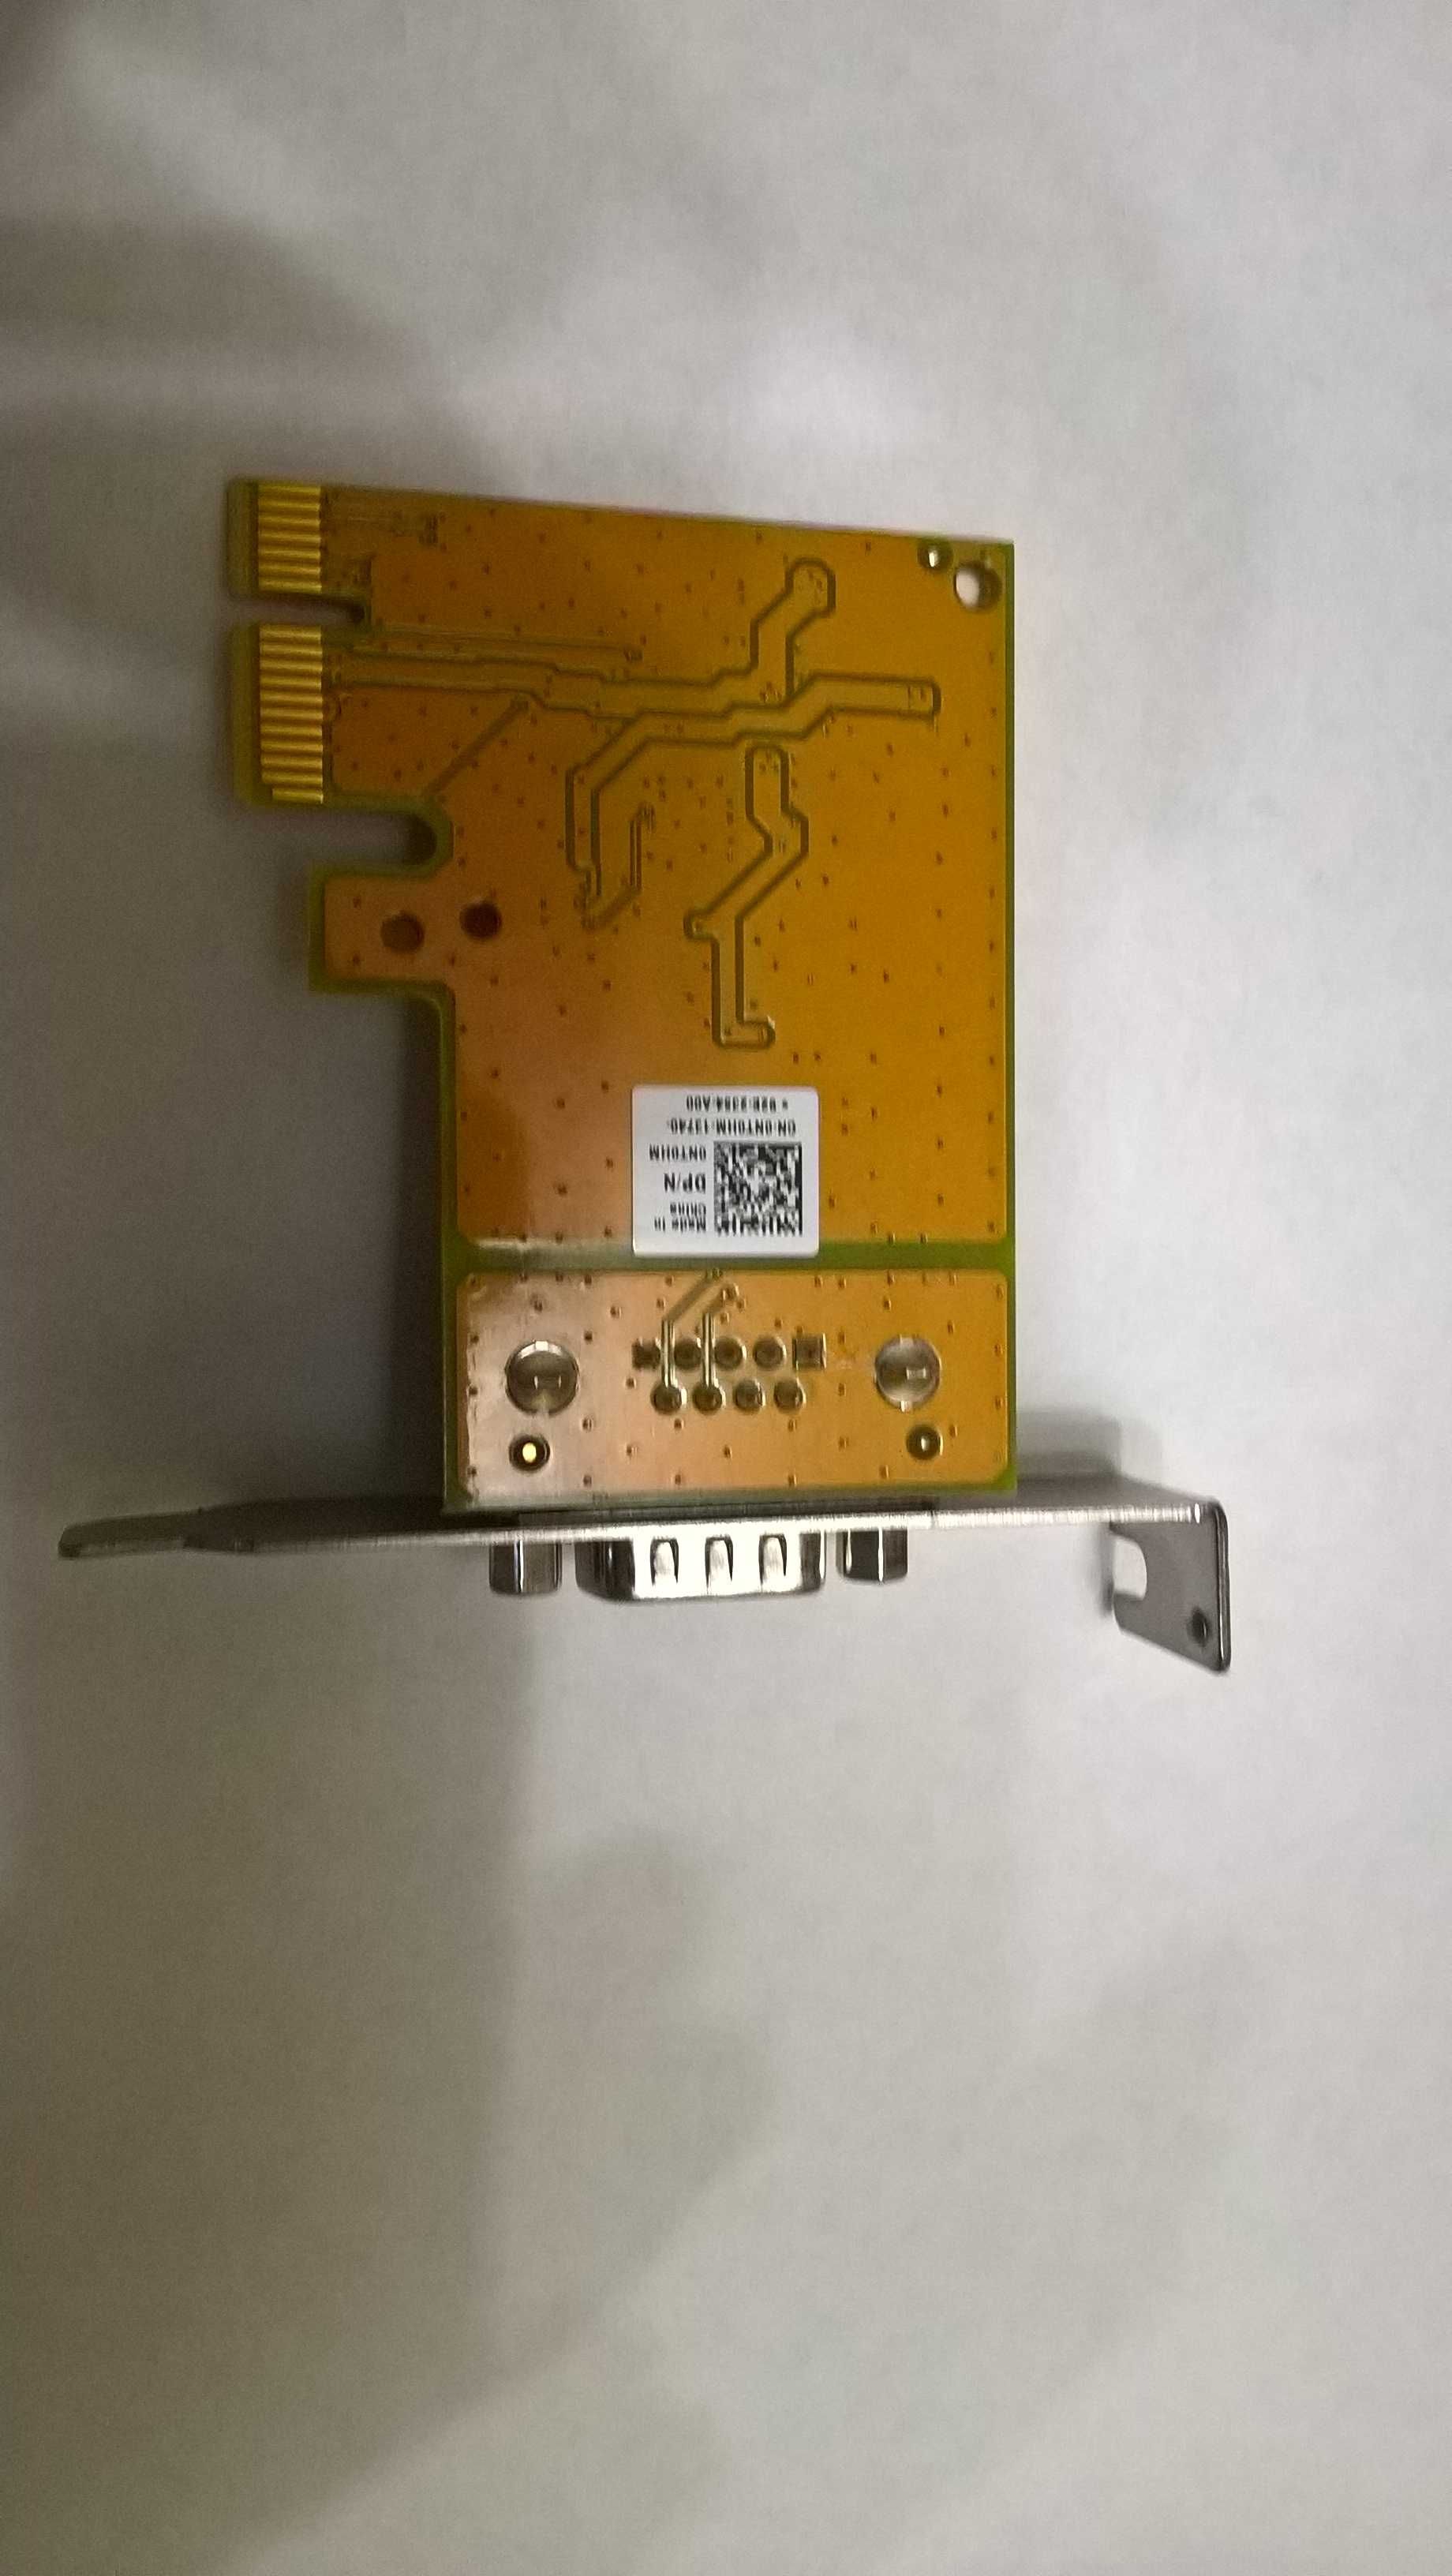 ser6427a PCIEx Low Profile COM port